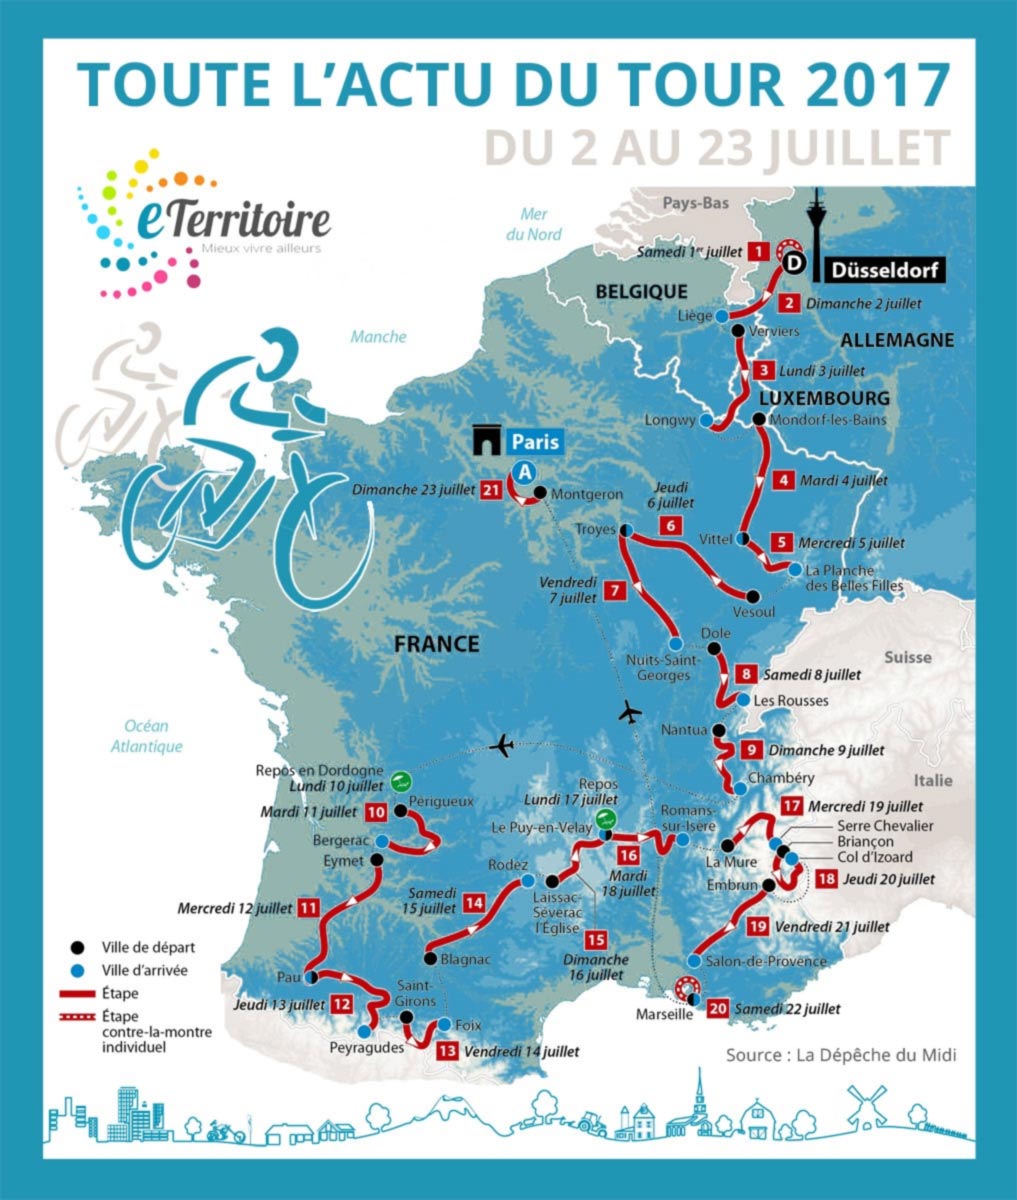 Tour de France 2017 - Puyvert - Passage d'étape